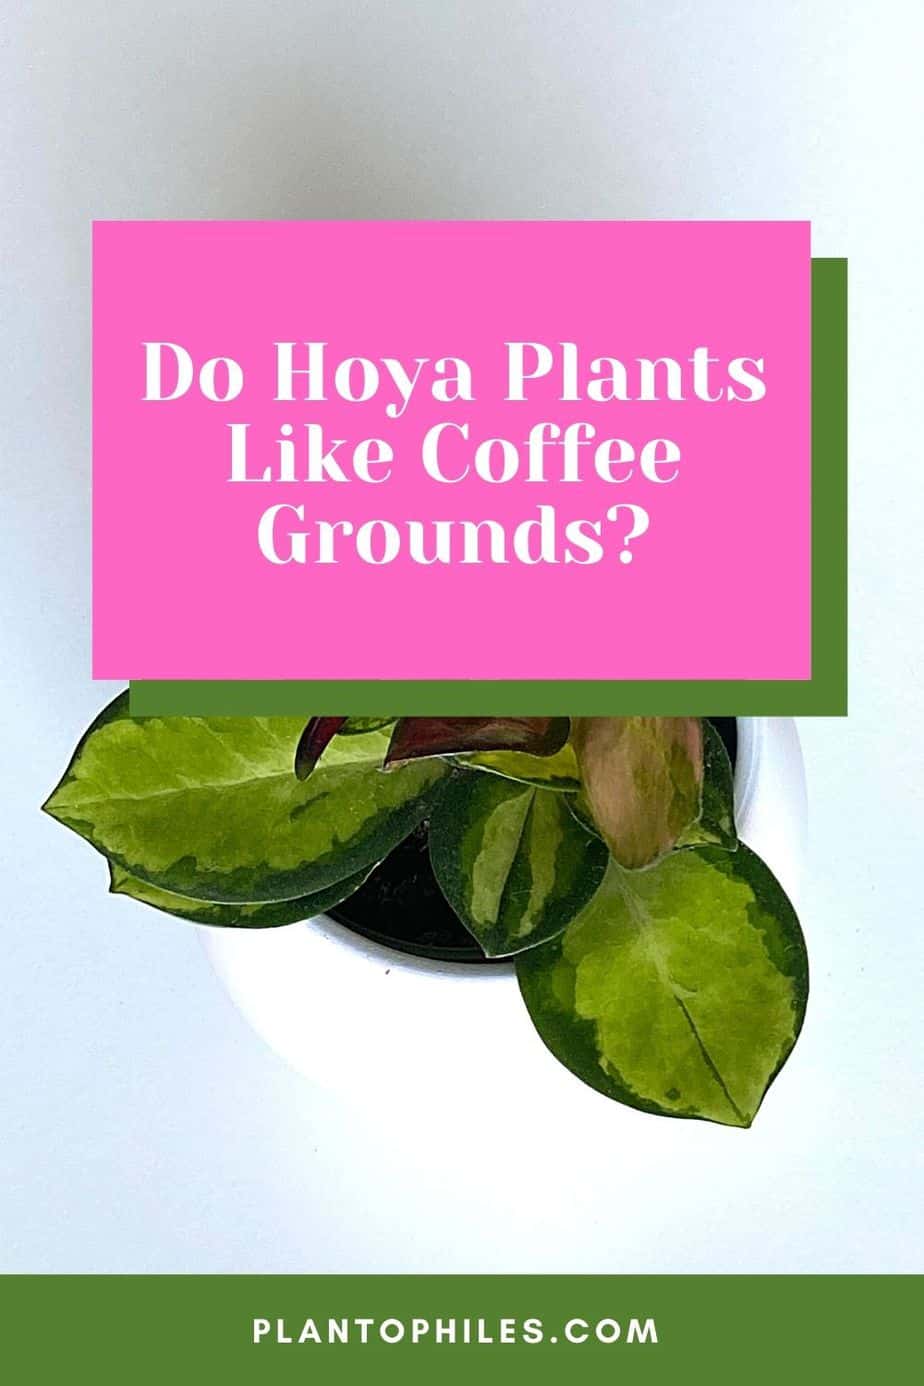 Do Hoya Plants Like Coffee Grounds?